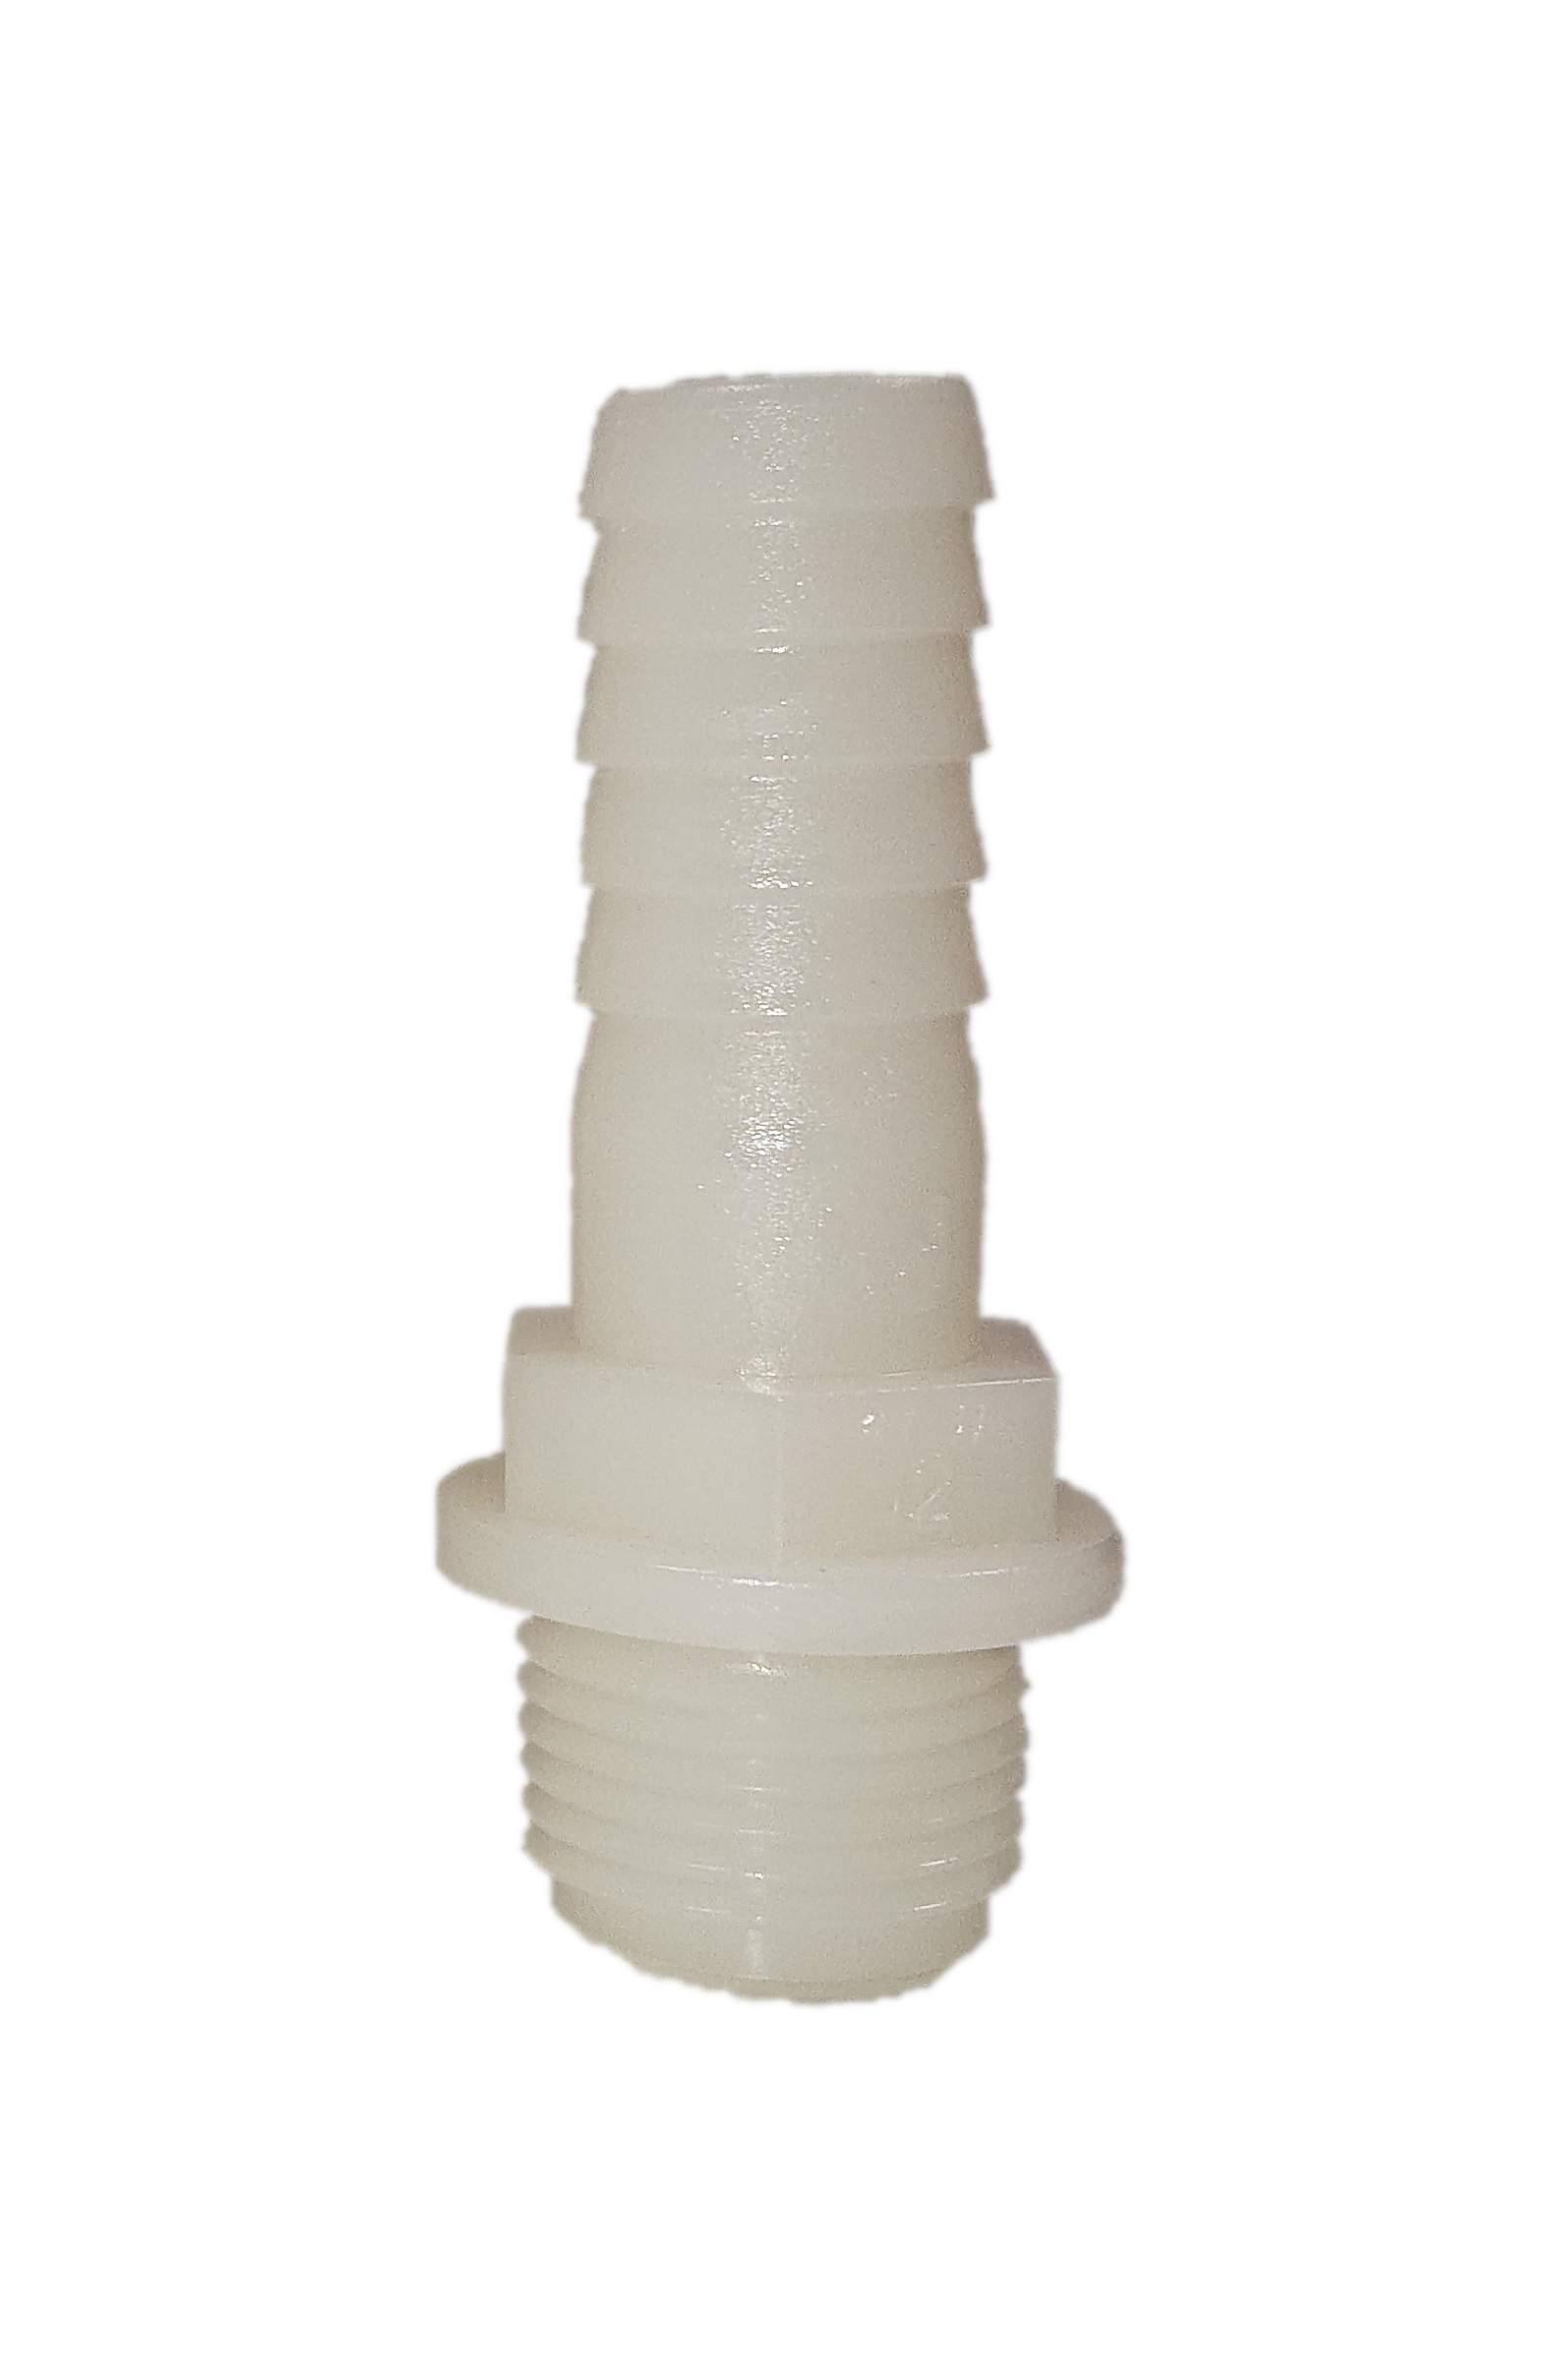 Portagomma maschio in poliammide 15x21 per tubo da 16mm